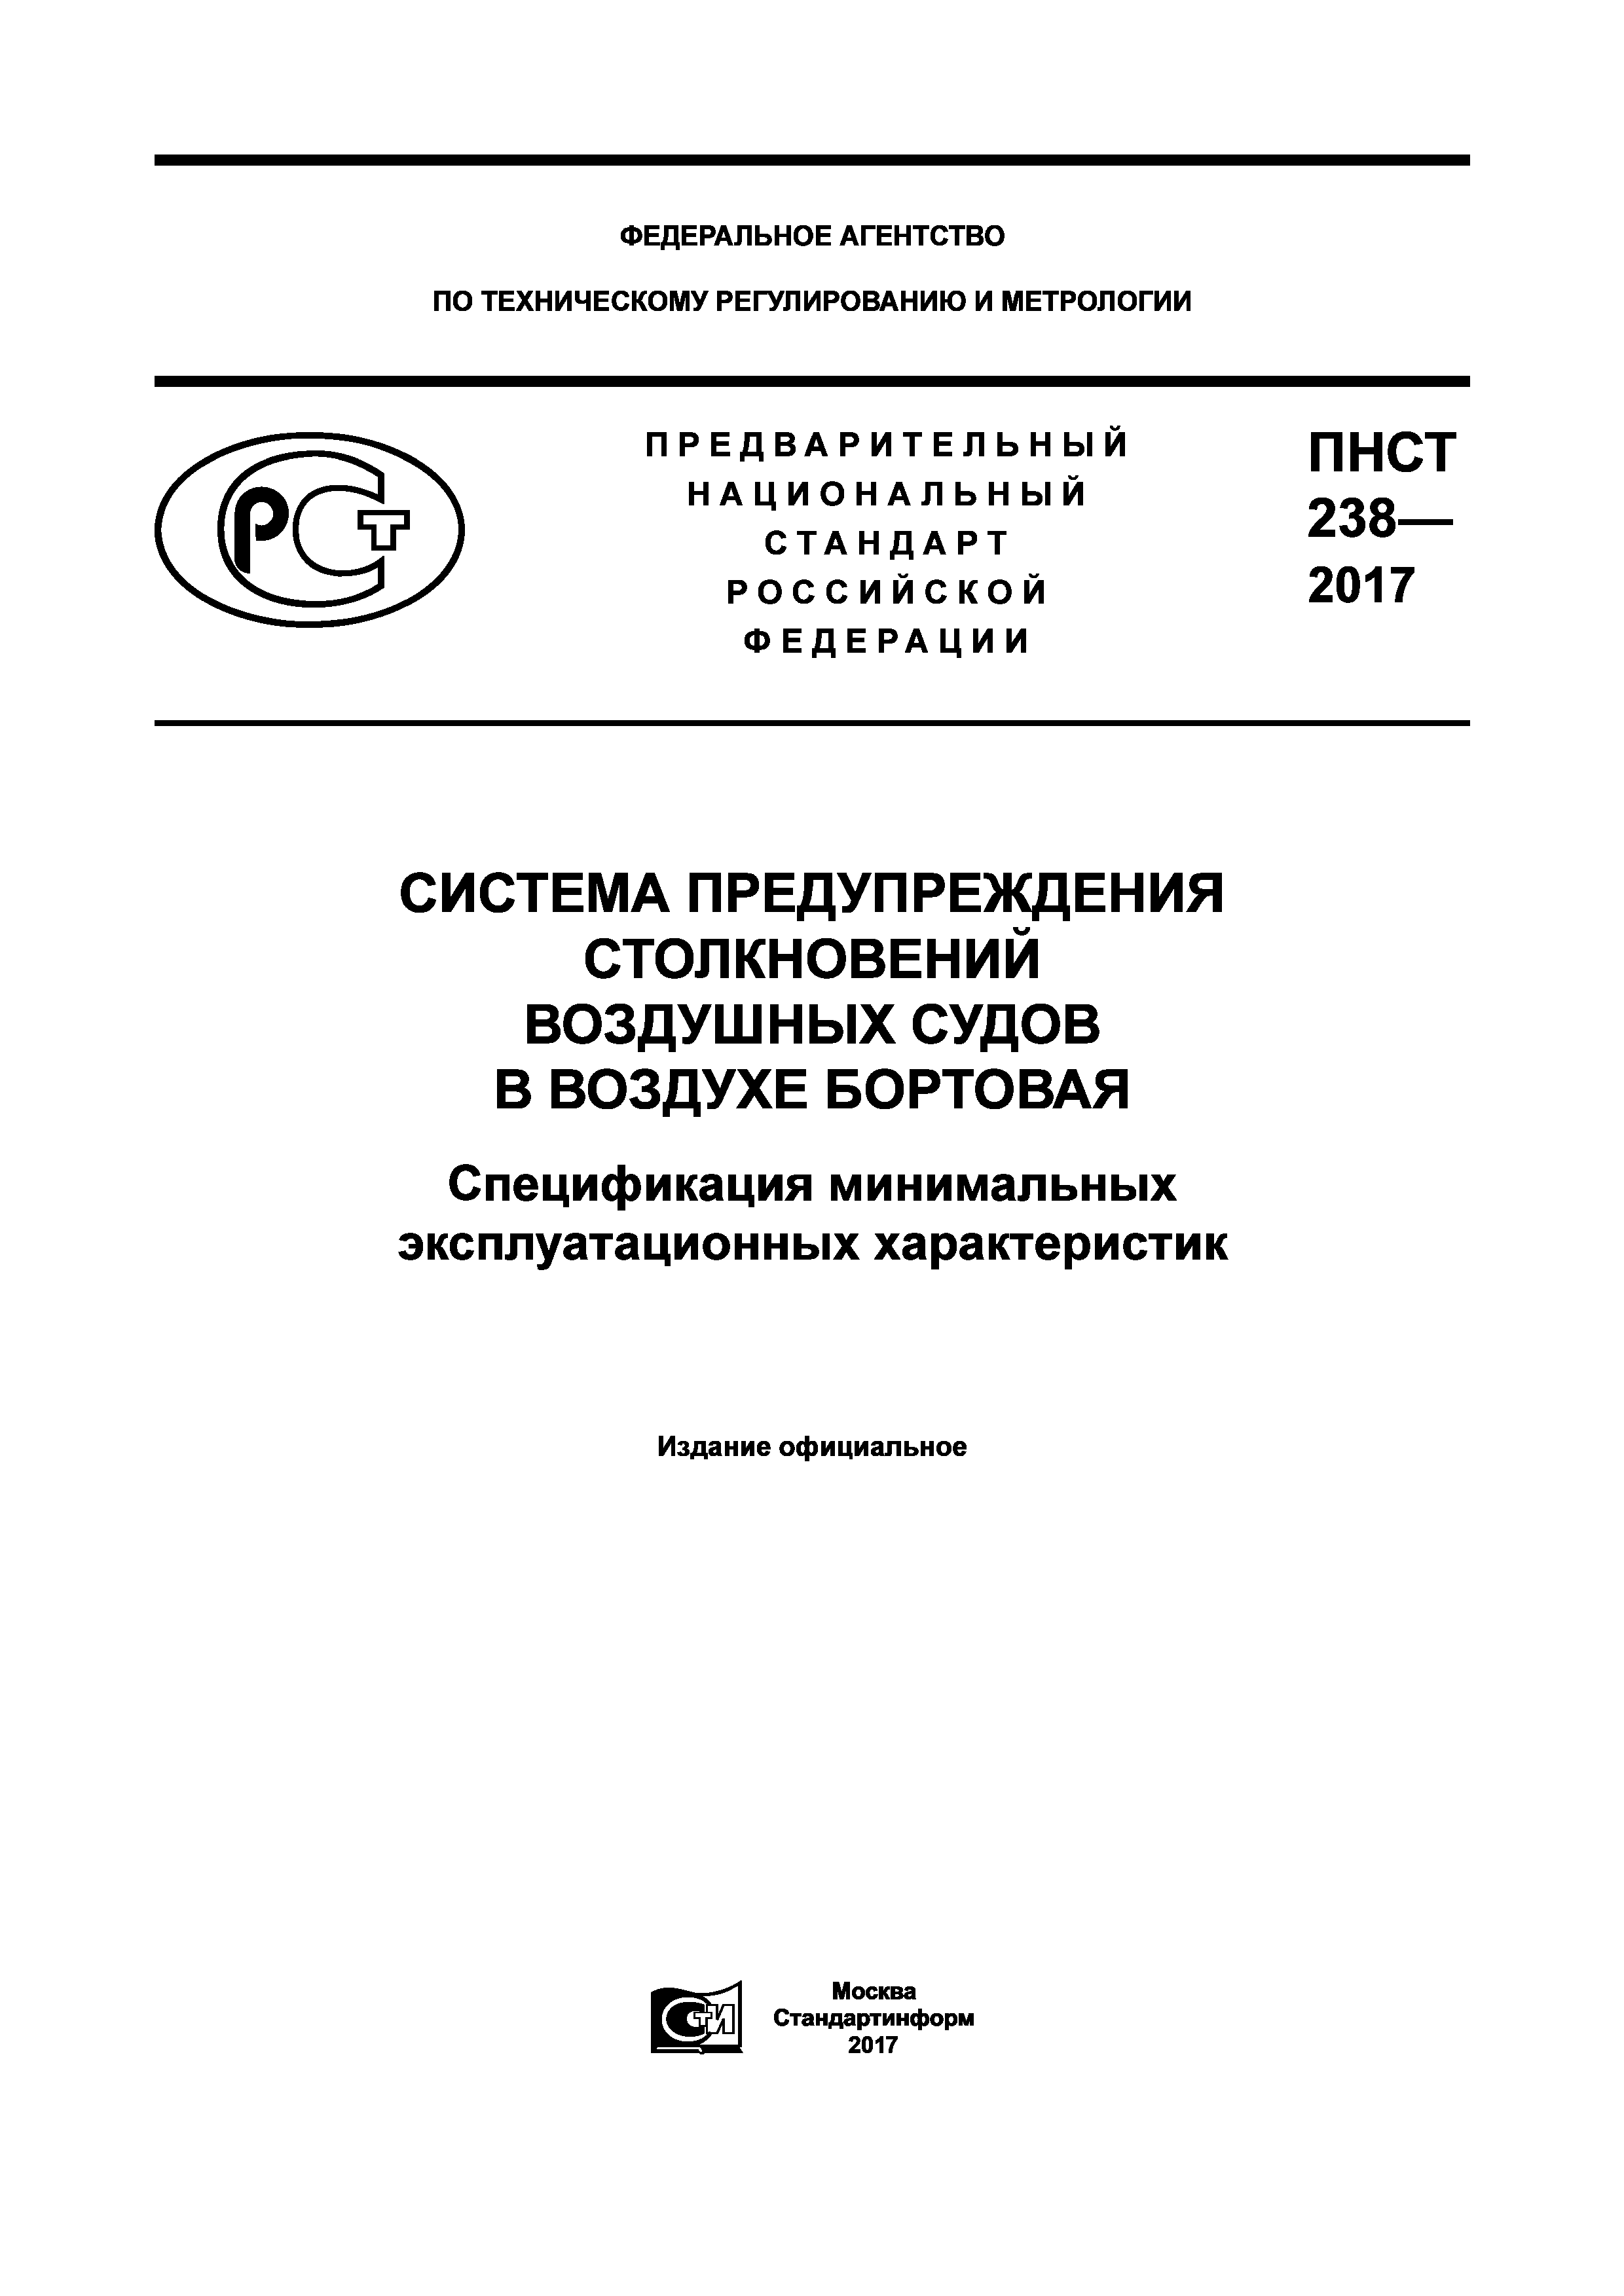 ПНСТ 238-2017